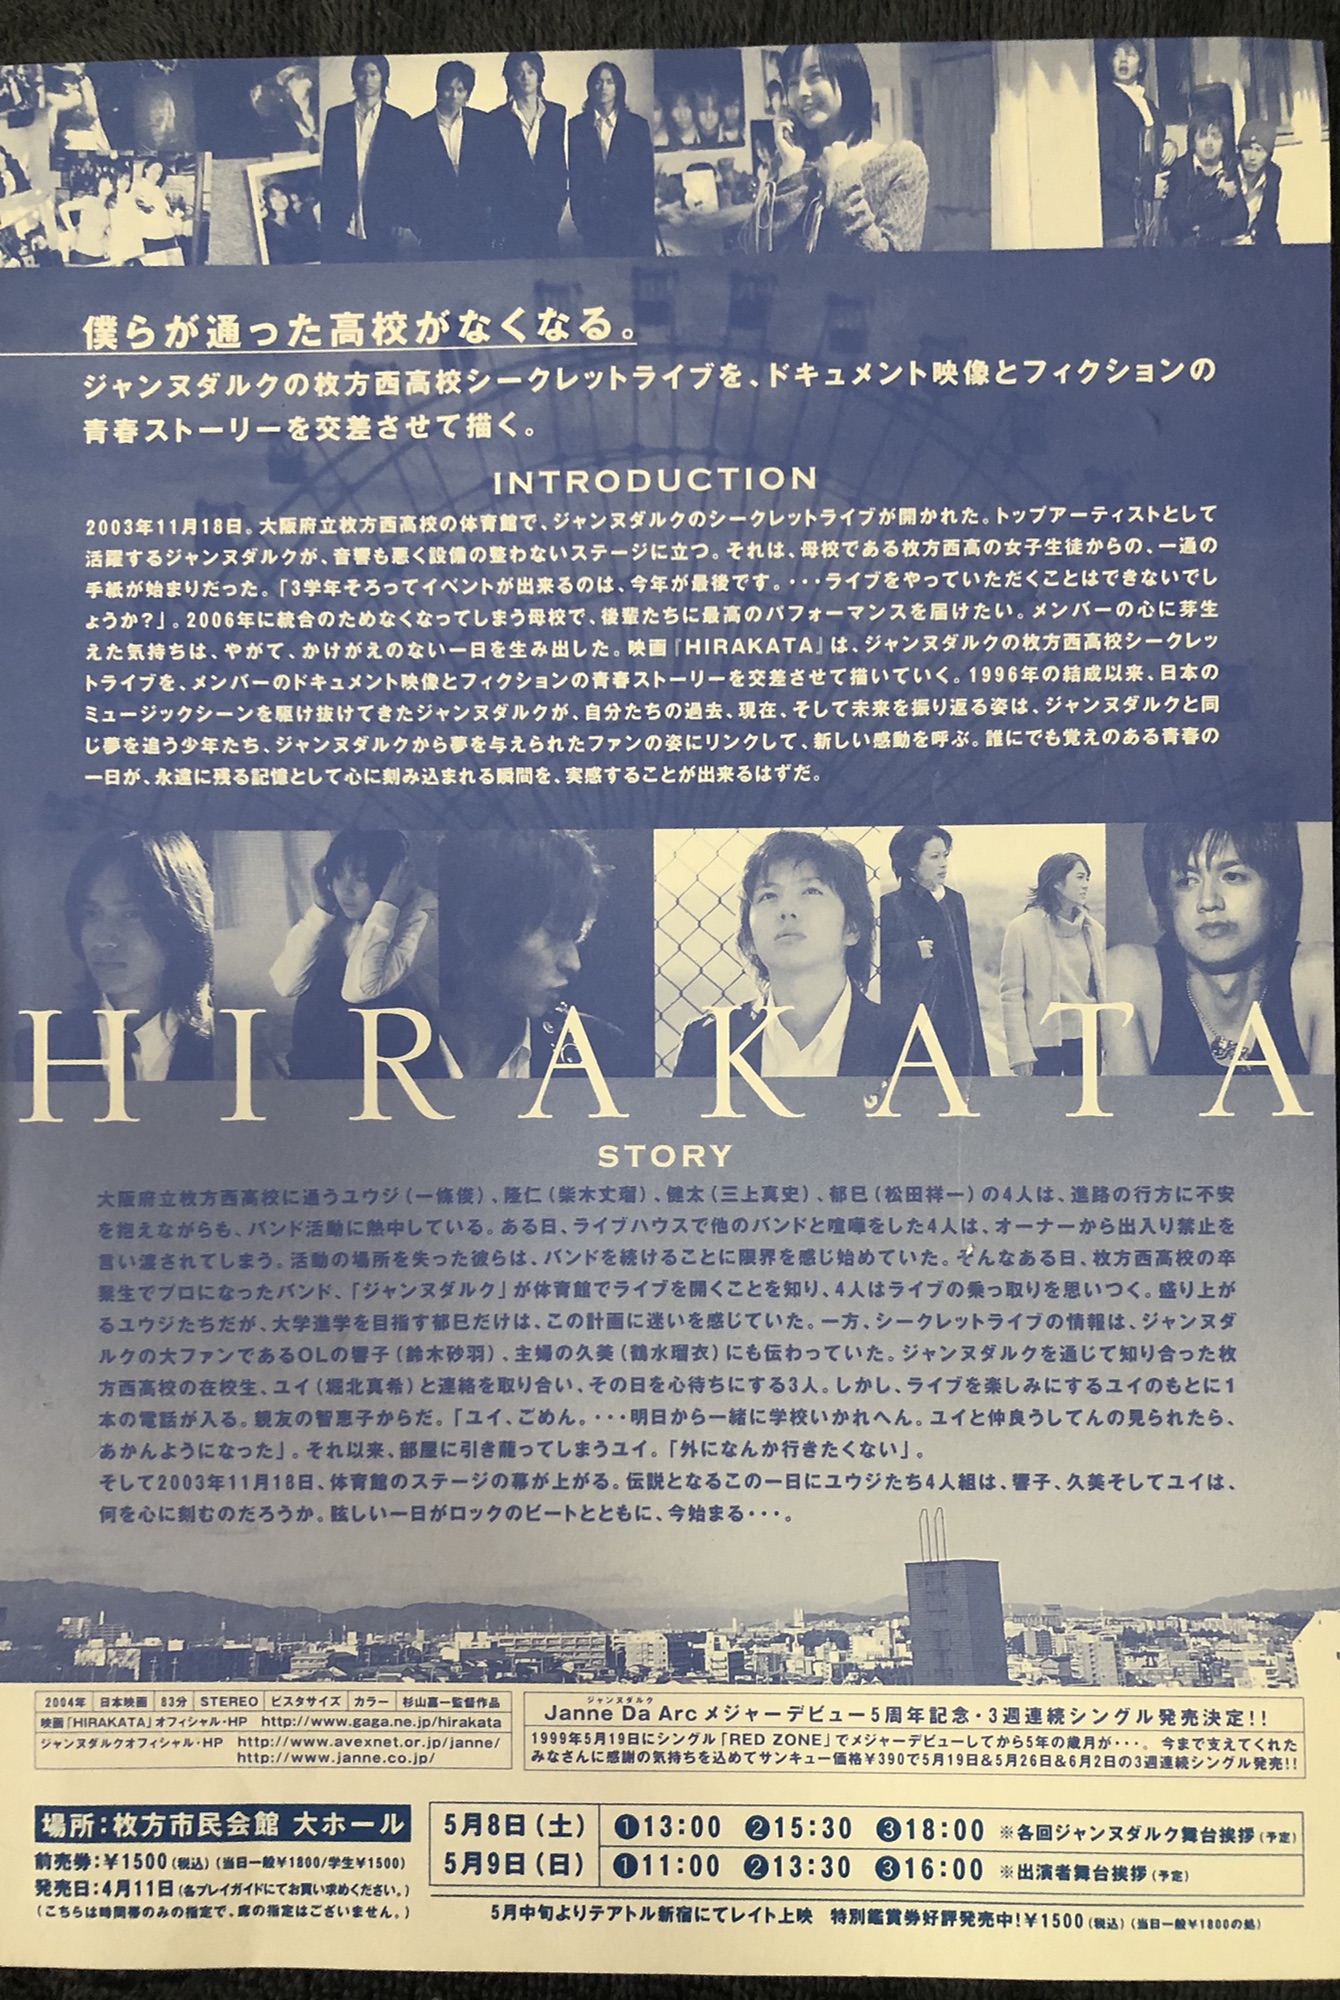 映画DVD〝HIRAKATA〟 | Janne Da Arc discography 〝LEGEND OF